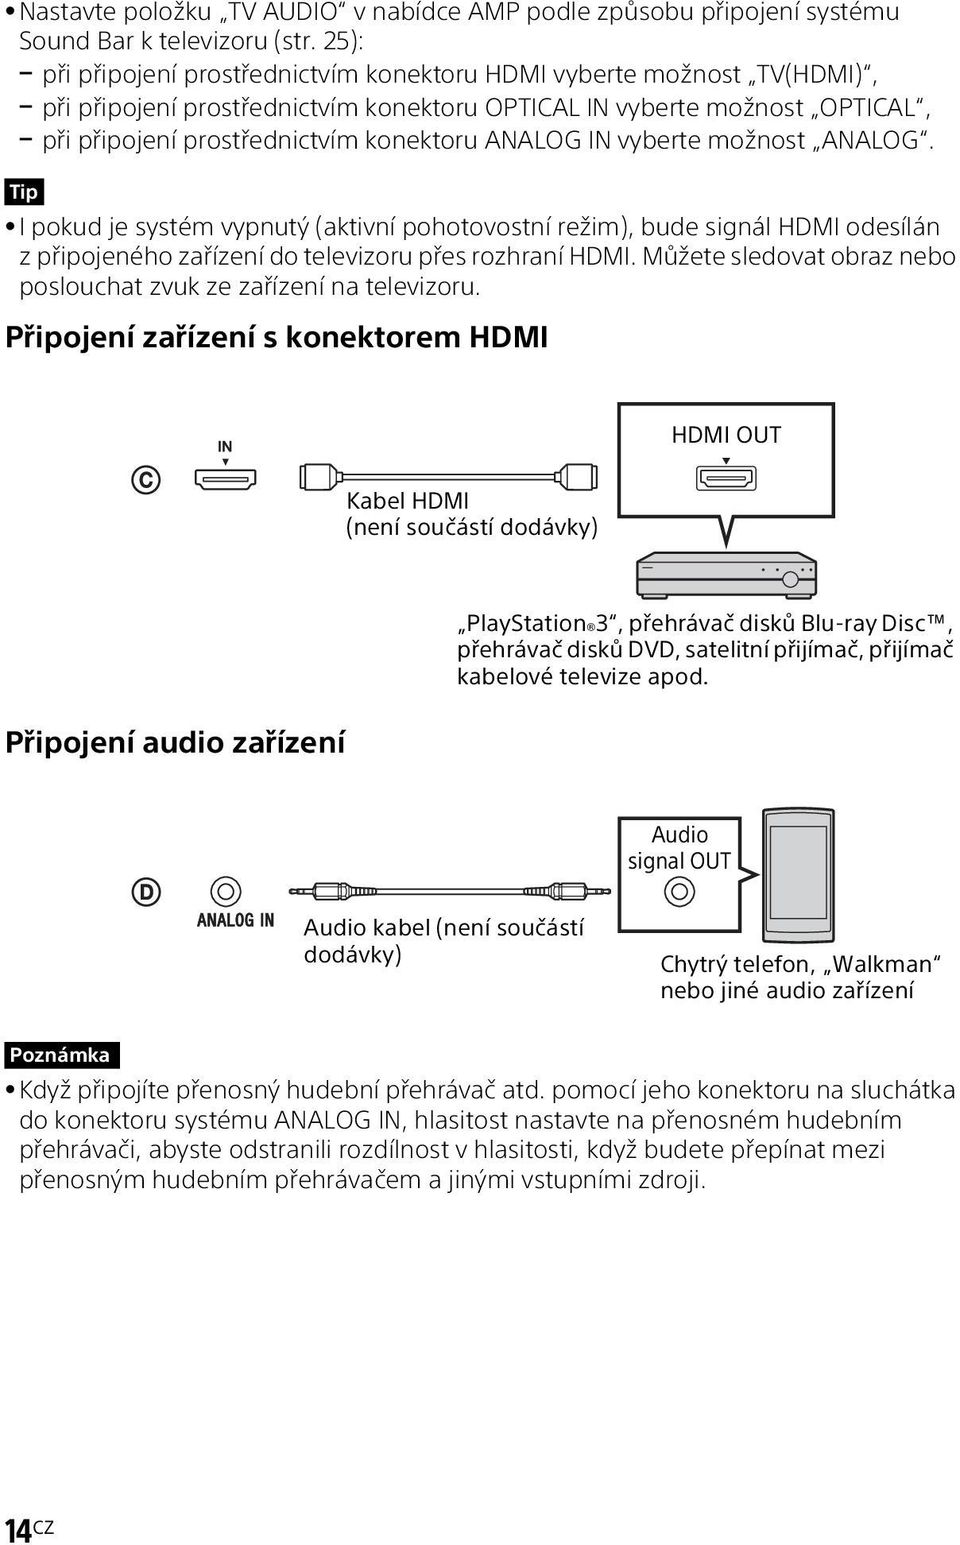 IN vyberte možnost ANALOG. Tip I pokud je systém vypnutý (aktivní pohotovostní režim), bude signál HDMI odesílán z připojeného zařízení do televizoru přes rozhraní HDMI.